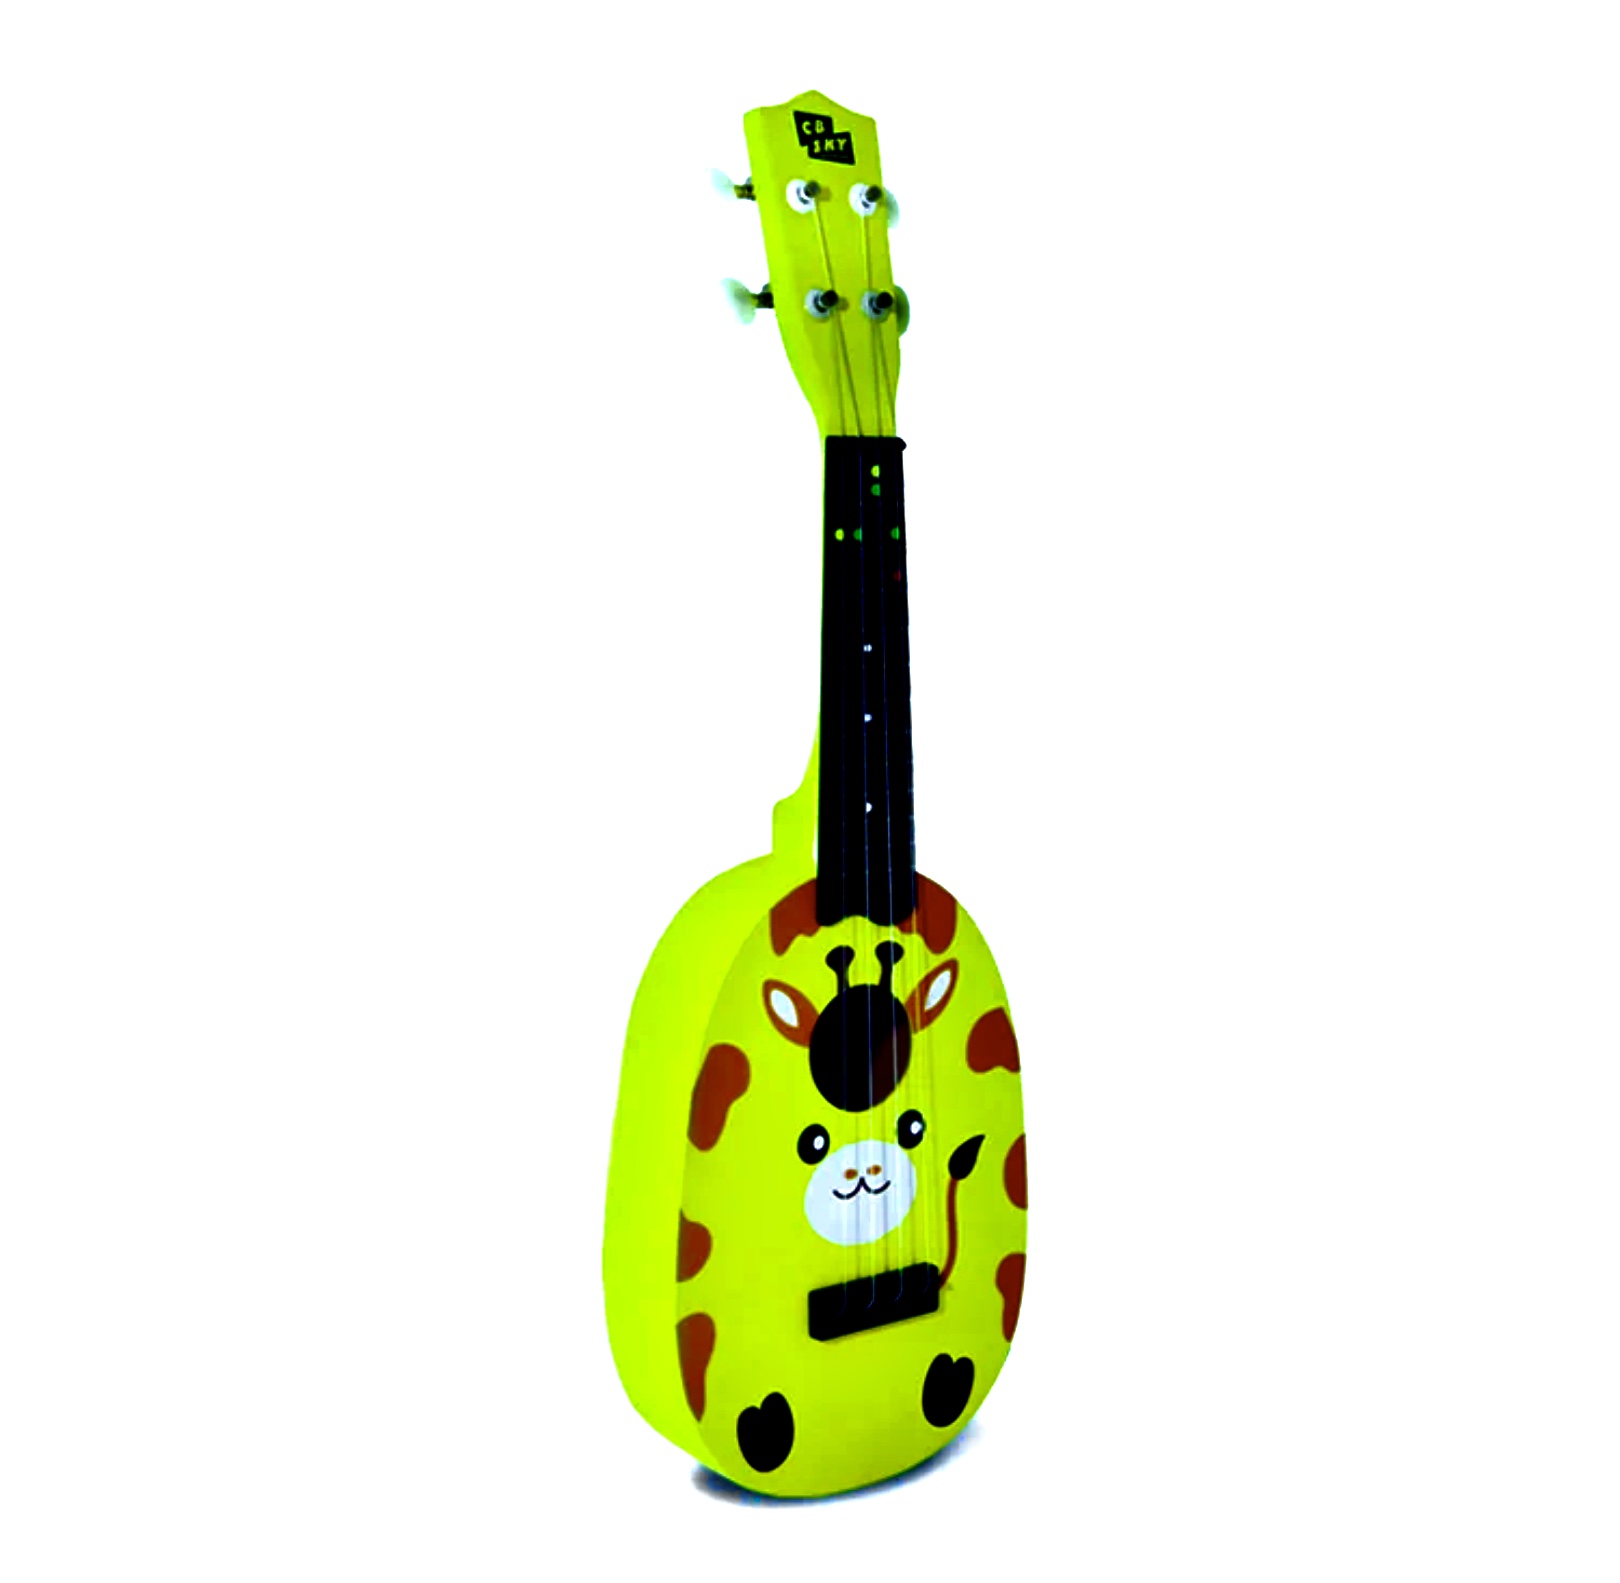 Chitara muzicală pentru copii pentru varsta de 3ani  un instrument ideal pentru a studia muzica.